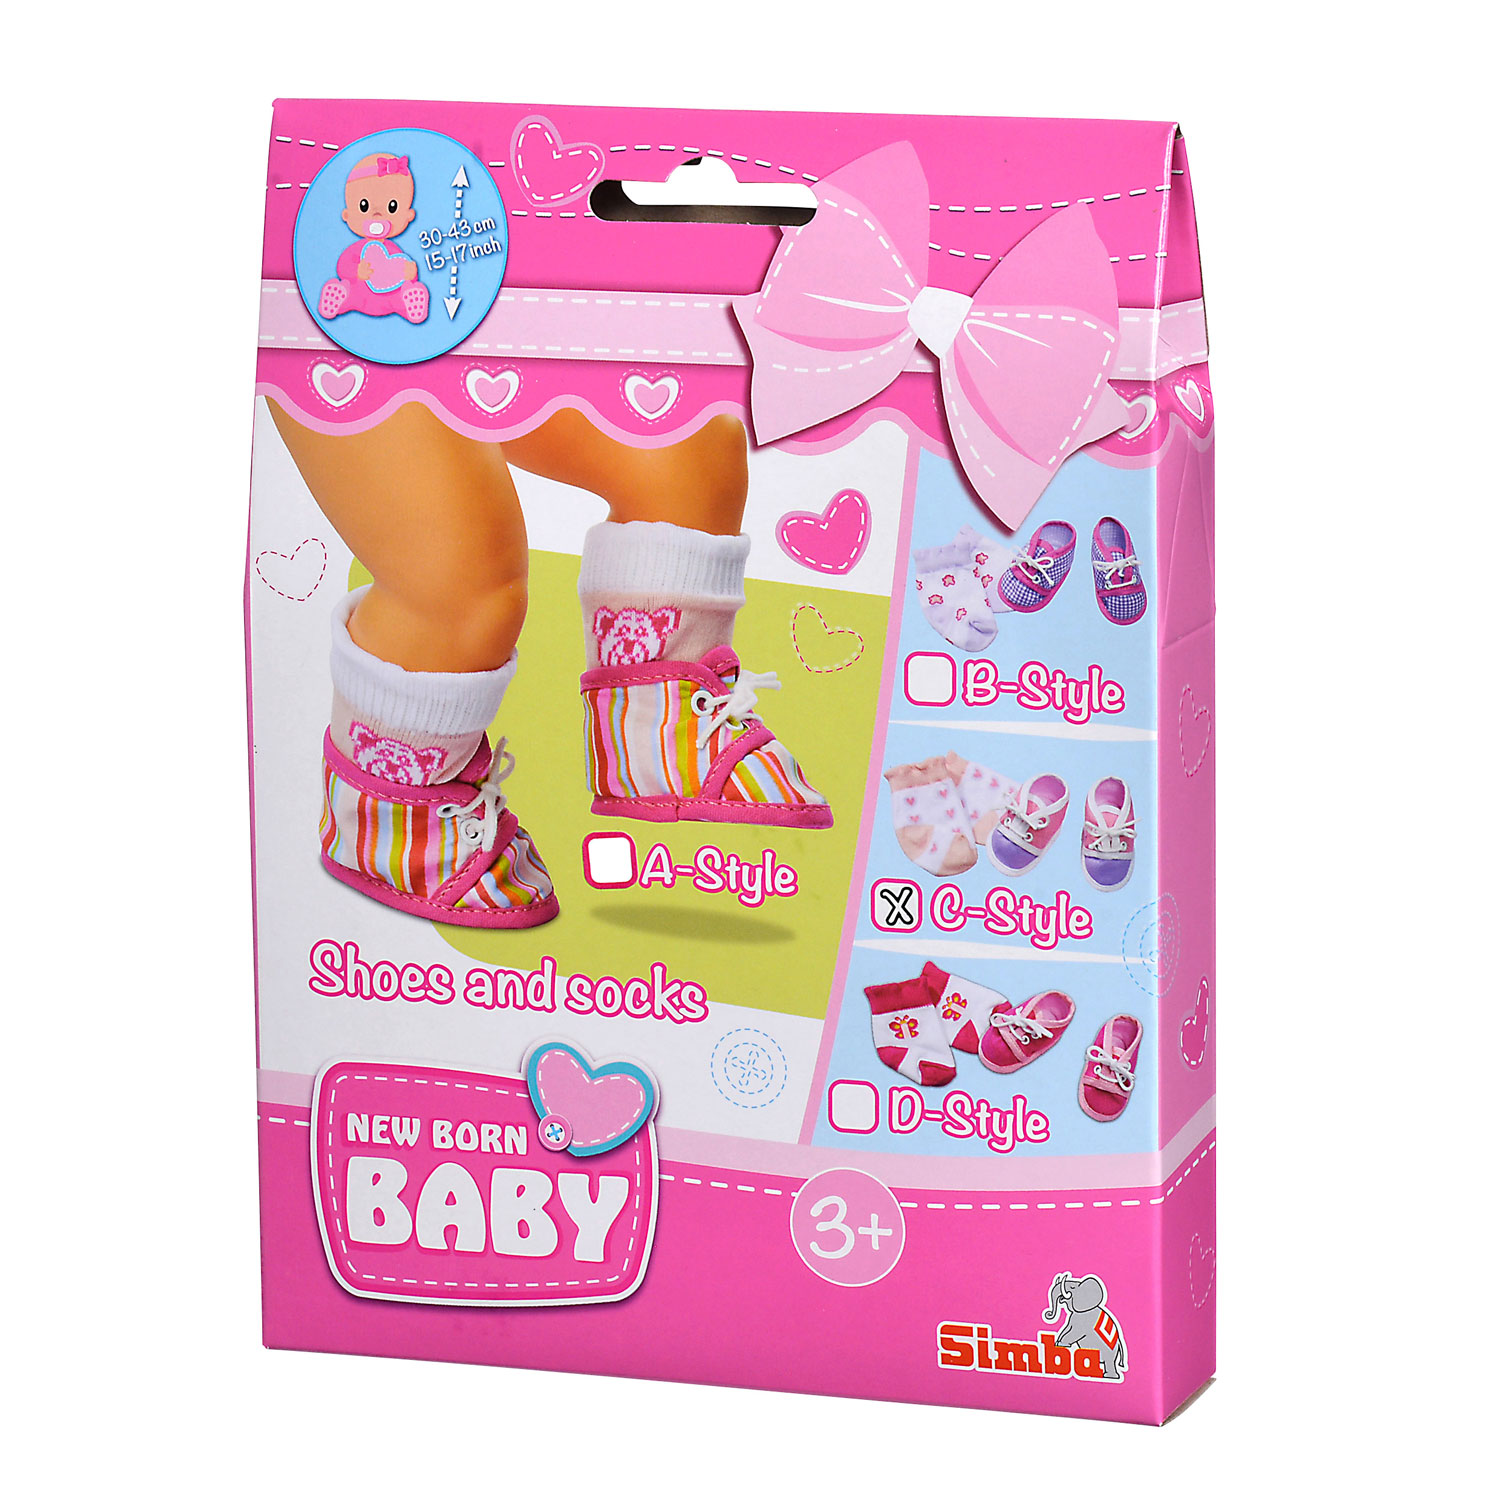 Socken für New Born Baby und lila-rosa Schuhe